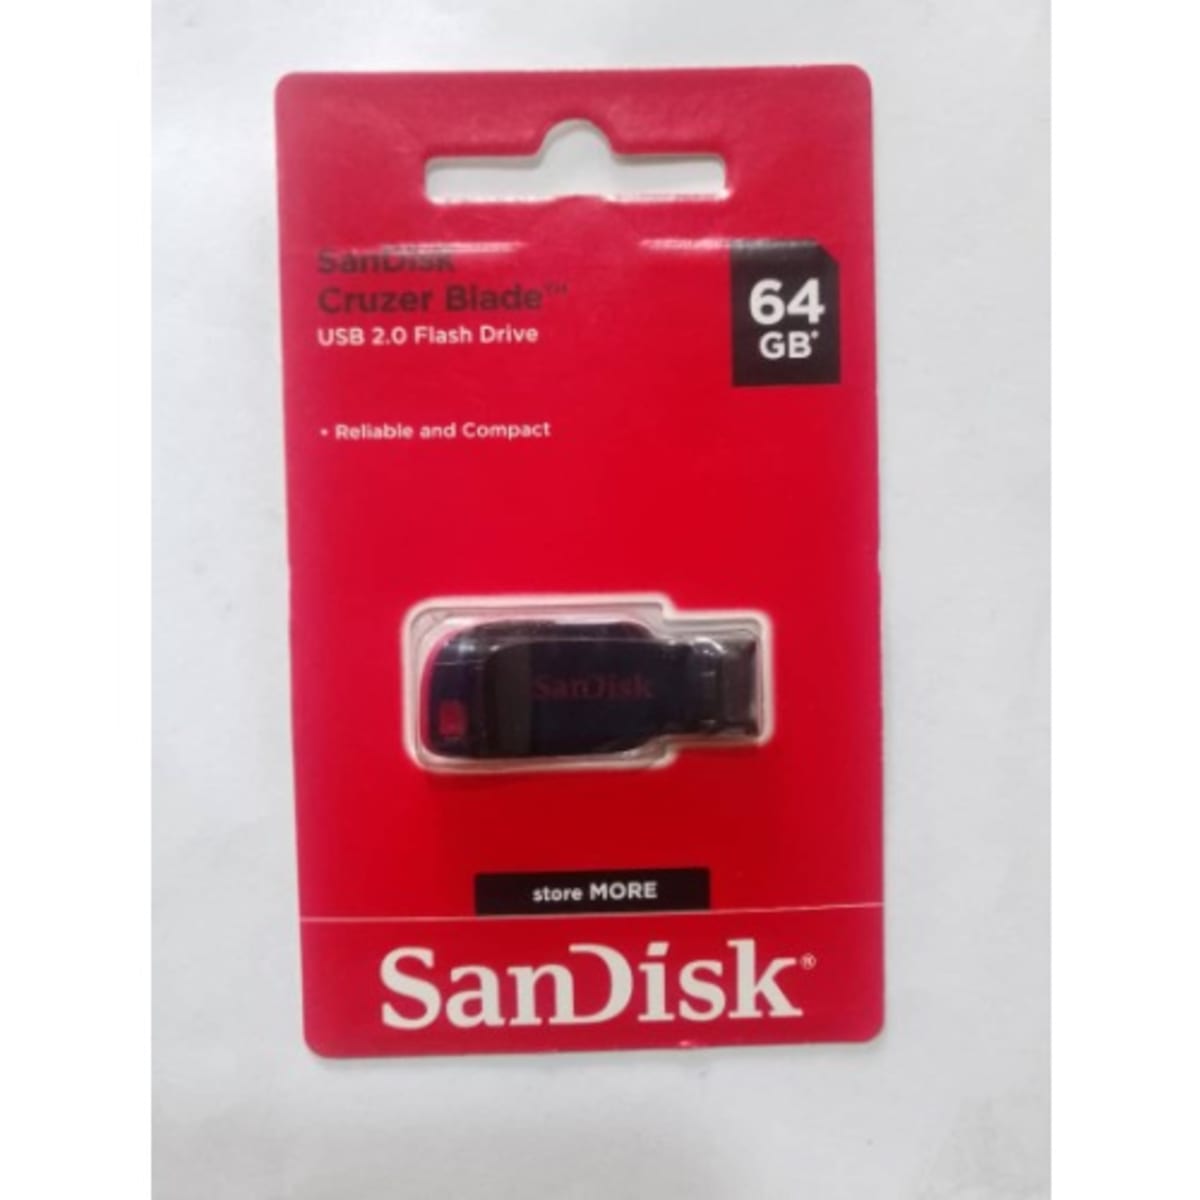 SanDisk Clé USB - 32Go - CZ50